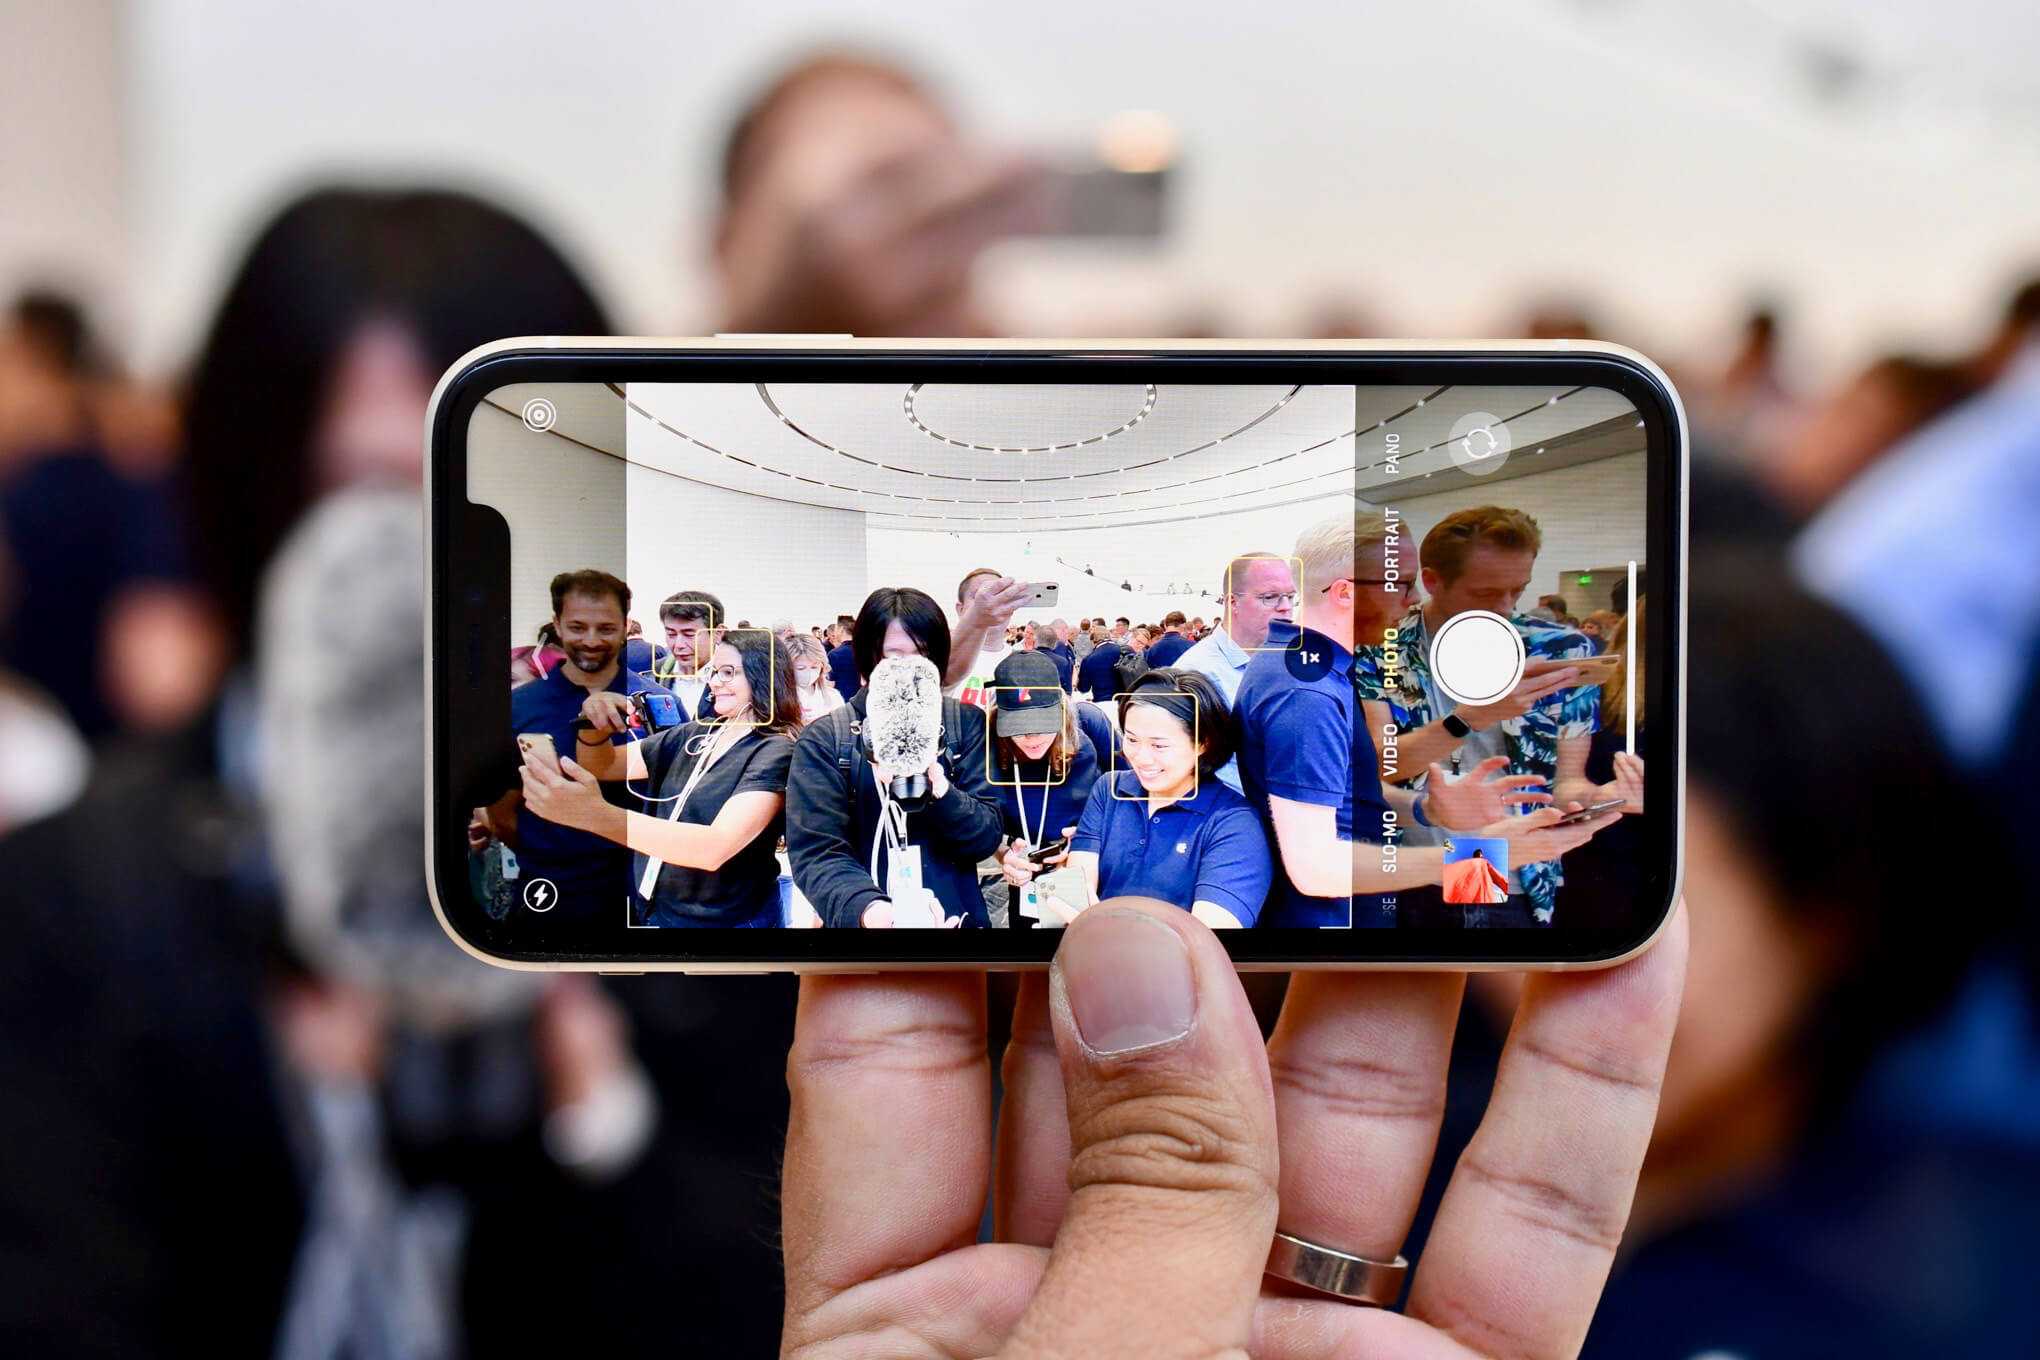 Цифровое увеличение фото. как в разы улучшить качество снимков на iphone » 1gai.ru - советы и технологии, автомобили, новости, статьи, фотографии